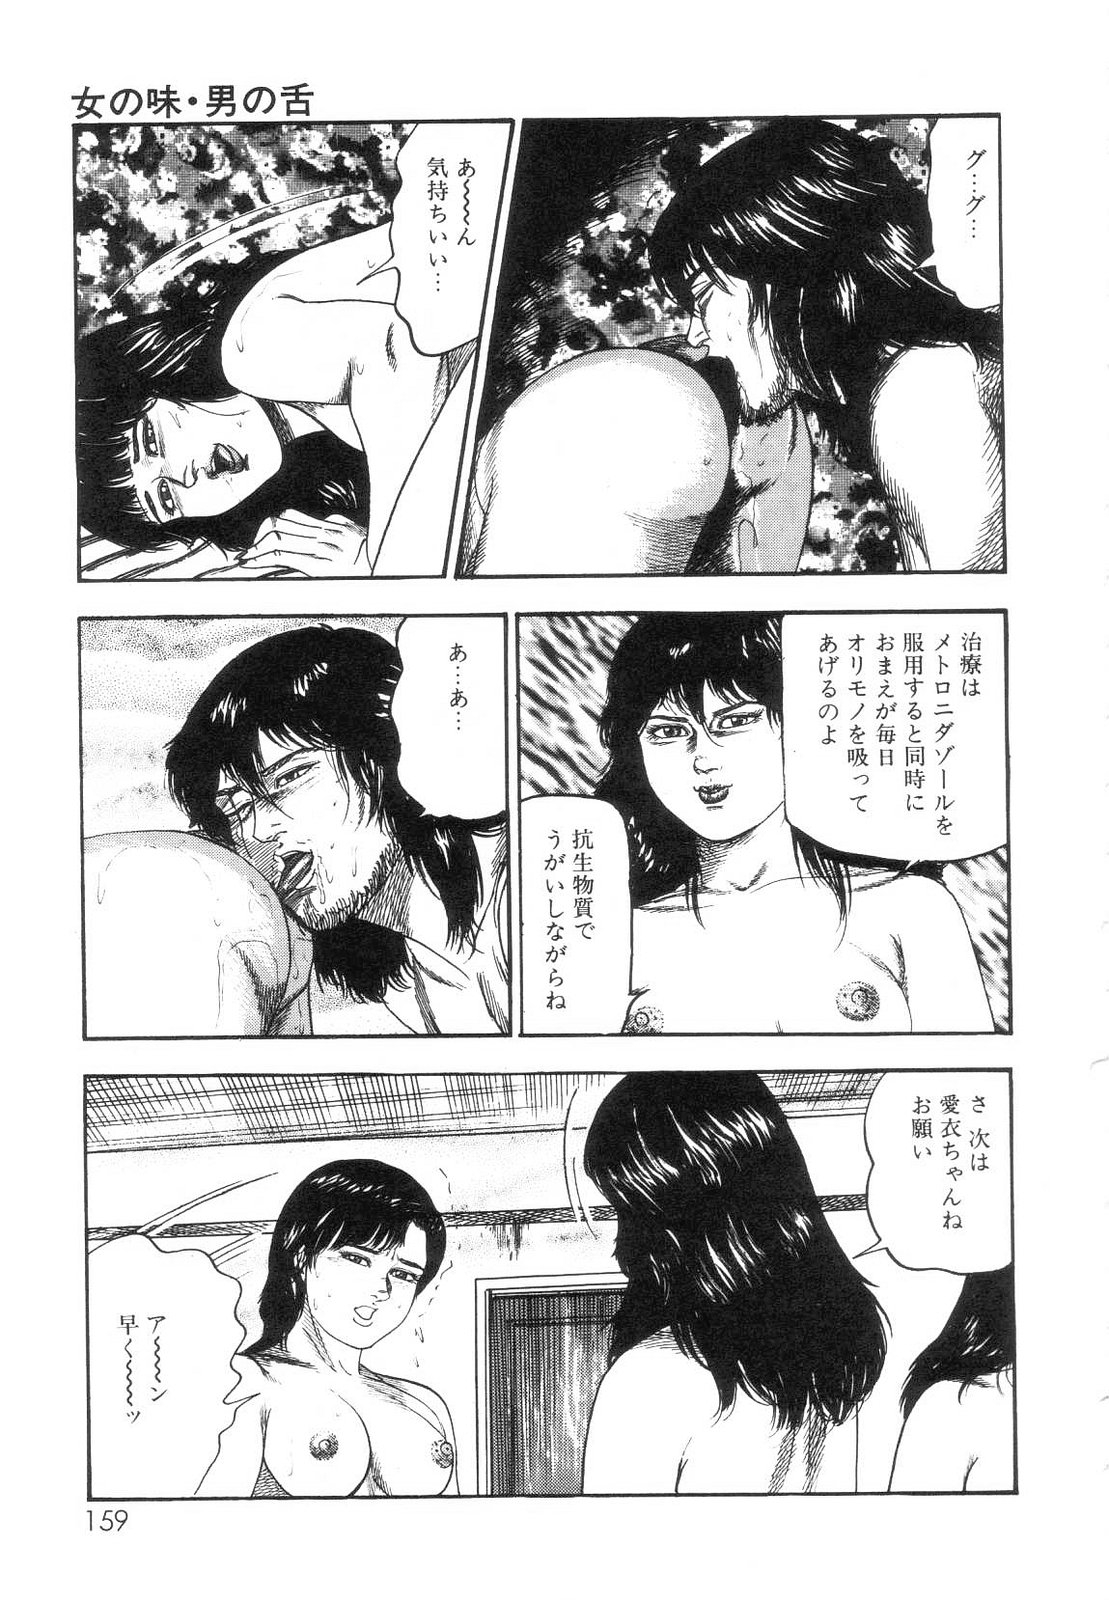 [Sanjou Tomomi] Shiro no Mokushiroku Vol. 7 - Shiiku Ningyou Erika no Shou 160